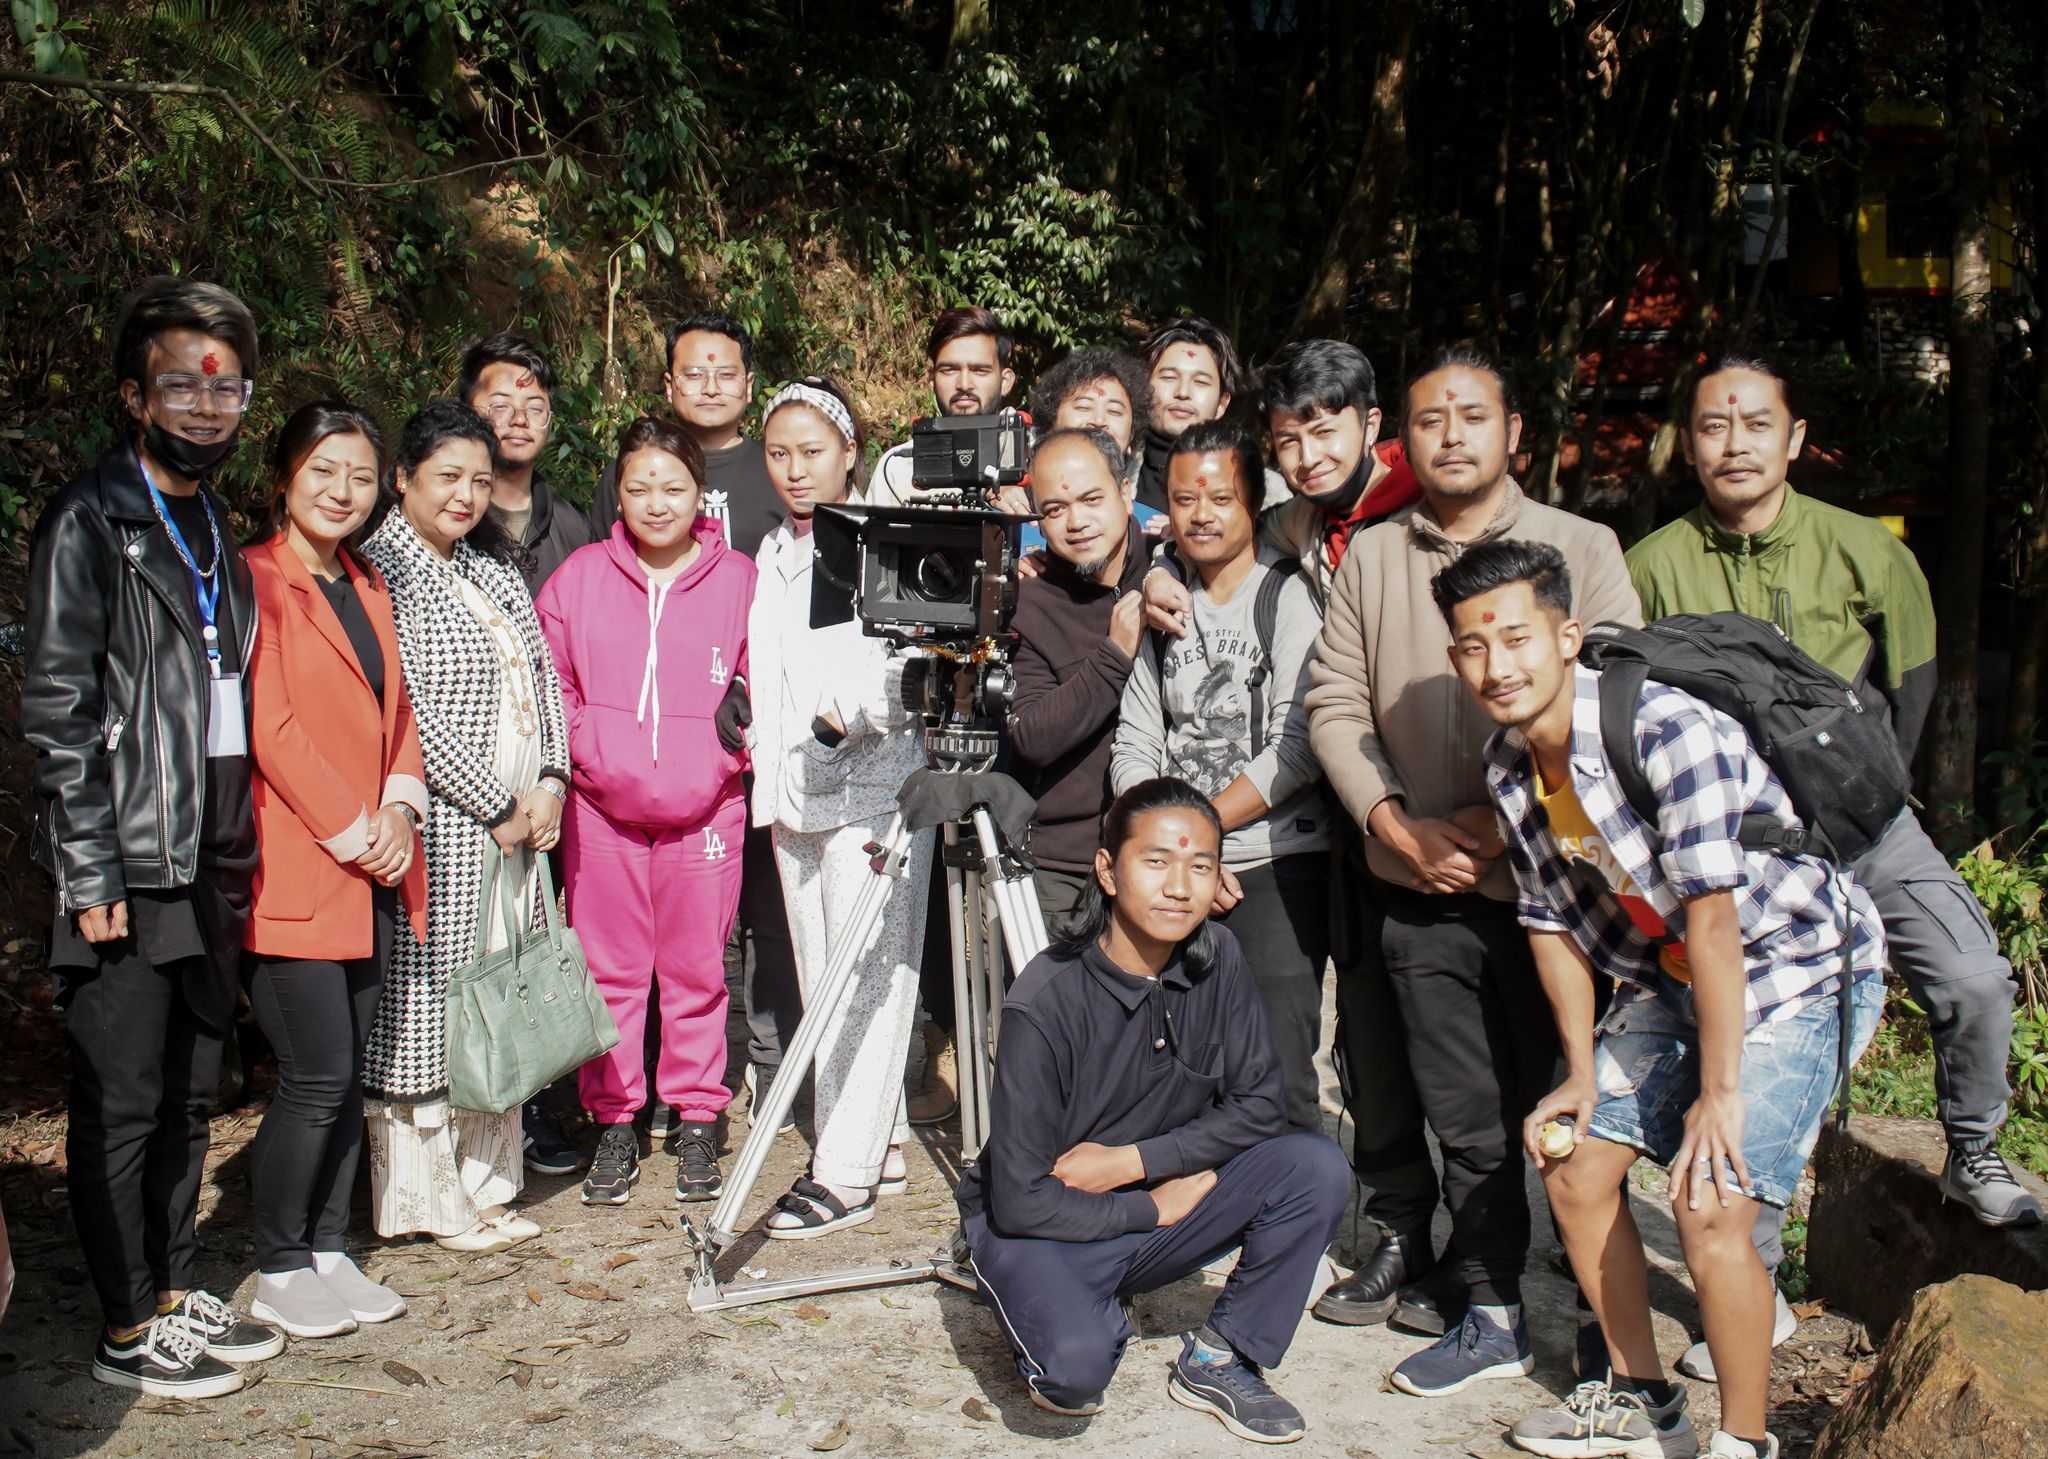 फिल्म ‘क्रसरोड्स-कथा तिम्रो र मेरो’को छायांकन शुरु